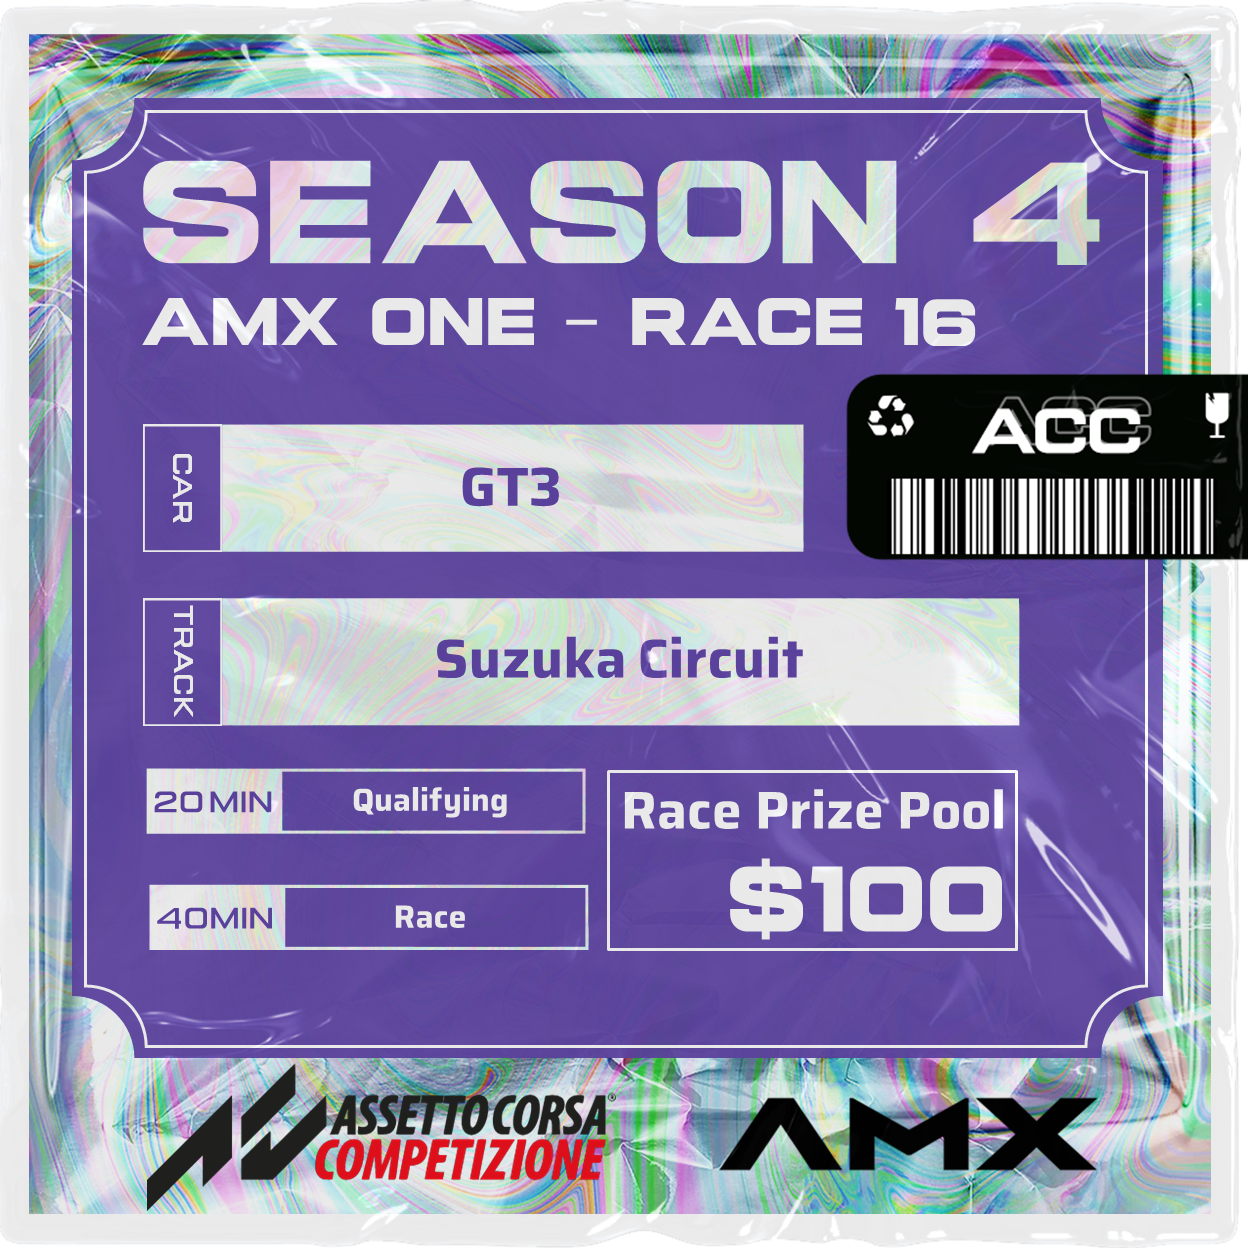 AMX ONE - RACE 16 [3/3 - 5:50 PM GMT]